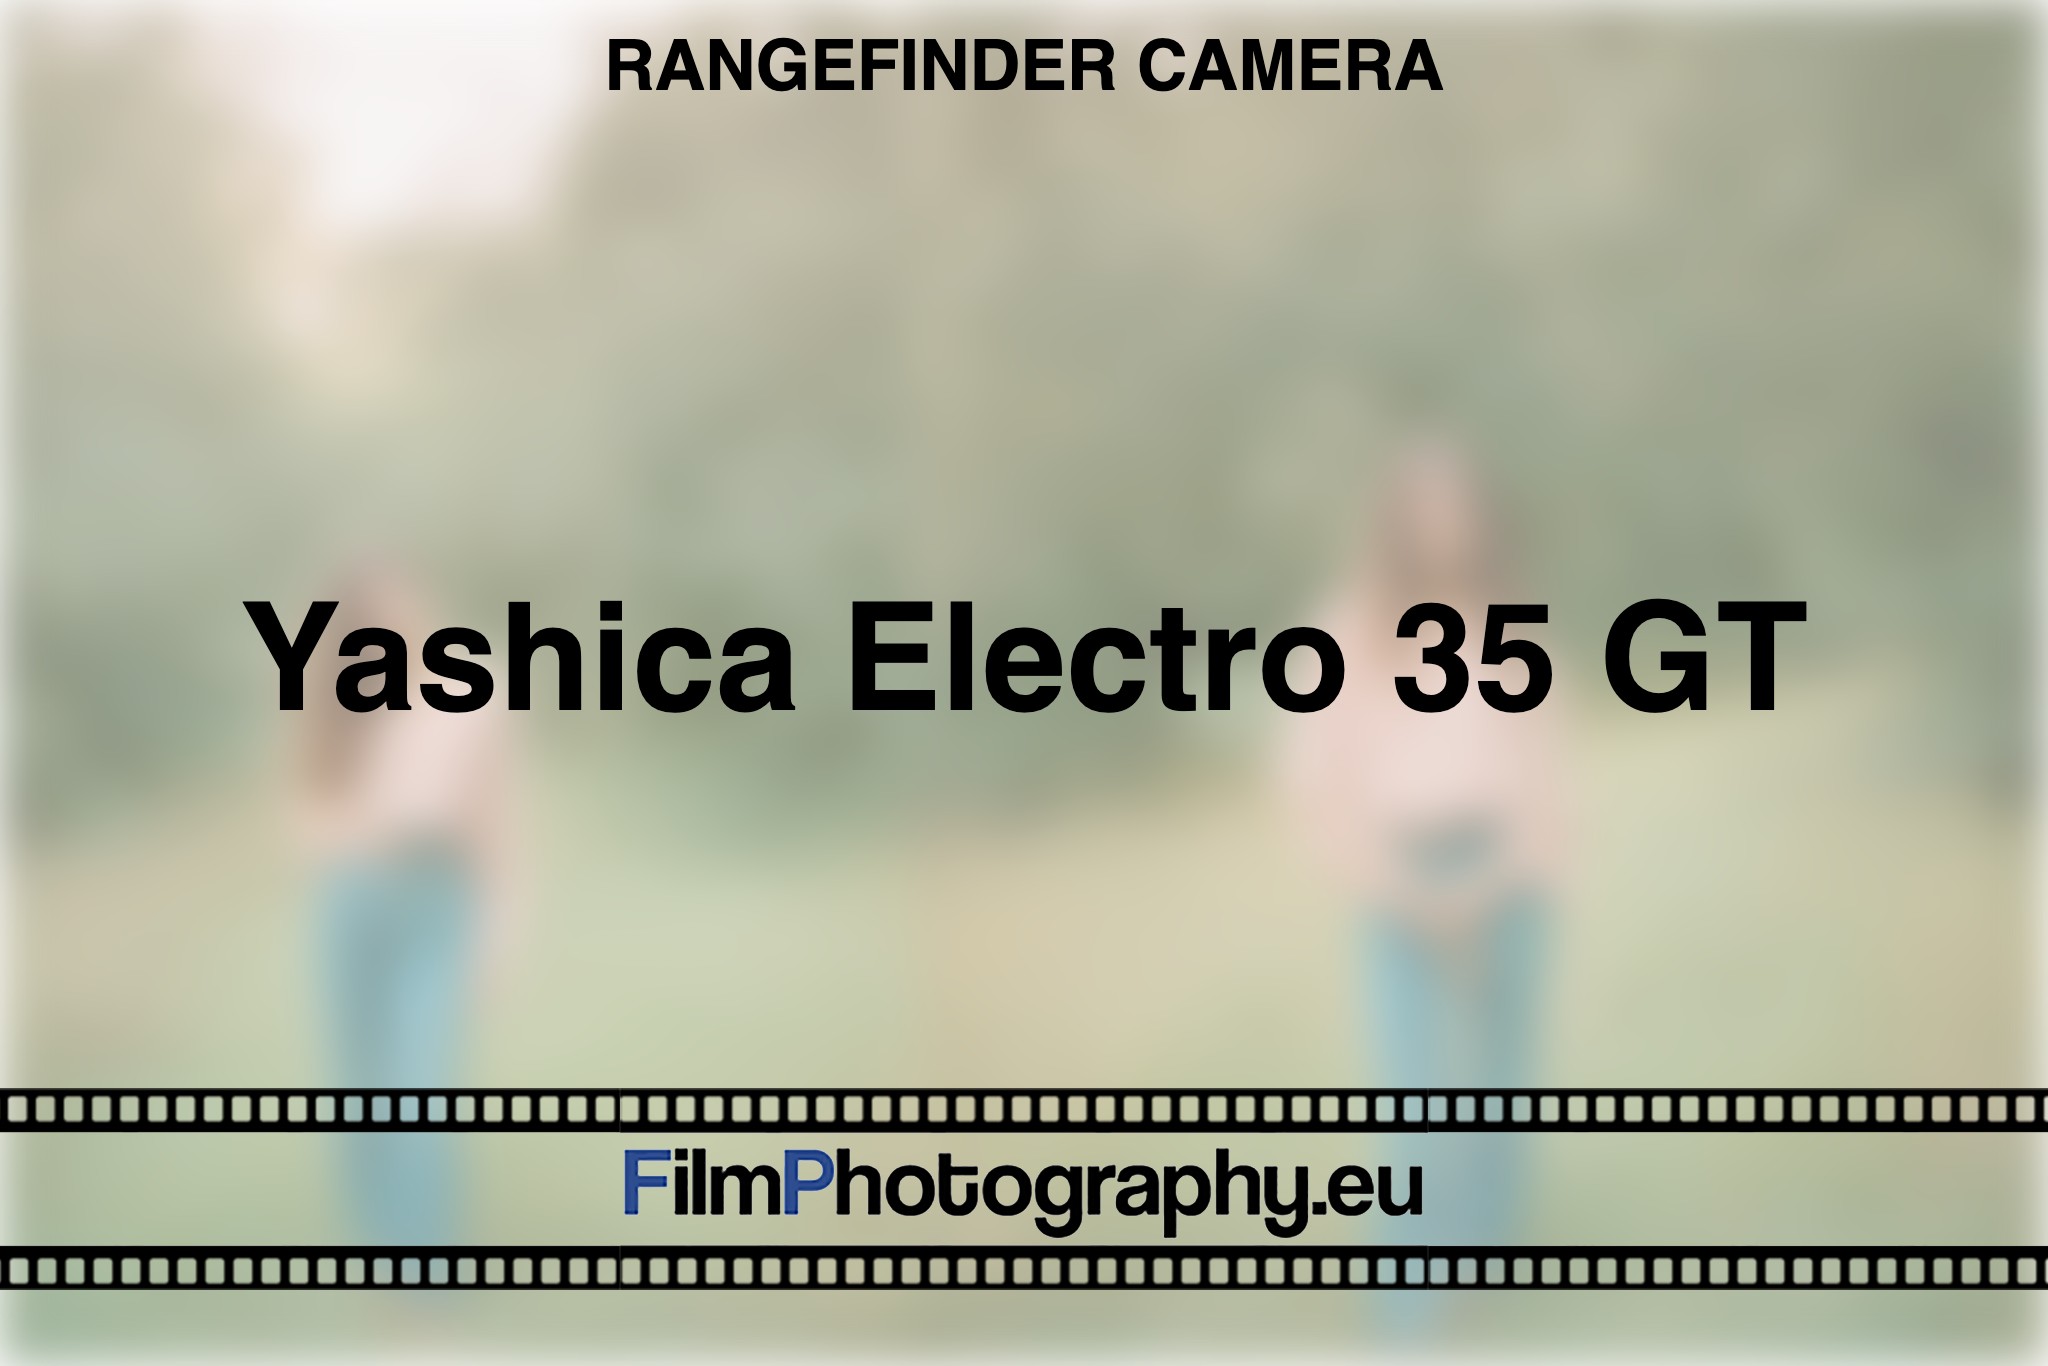 yashica-electro-35-gt-rangefinder-camera-bnv